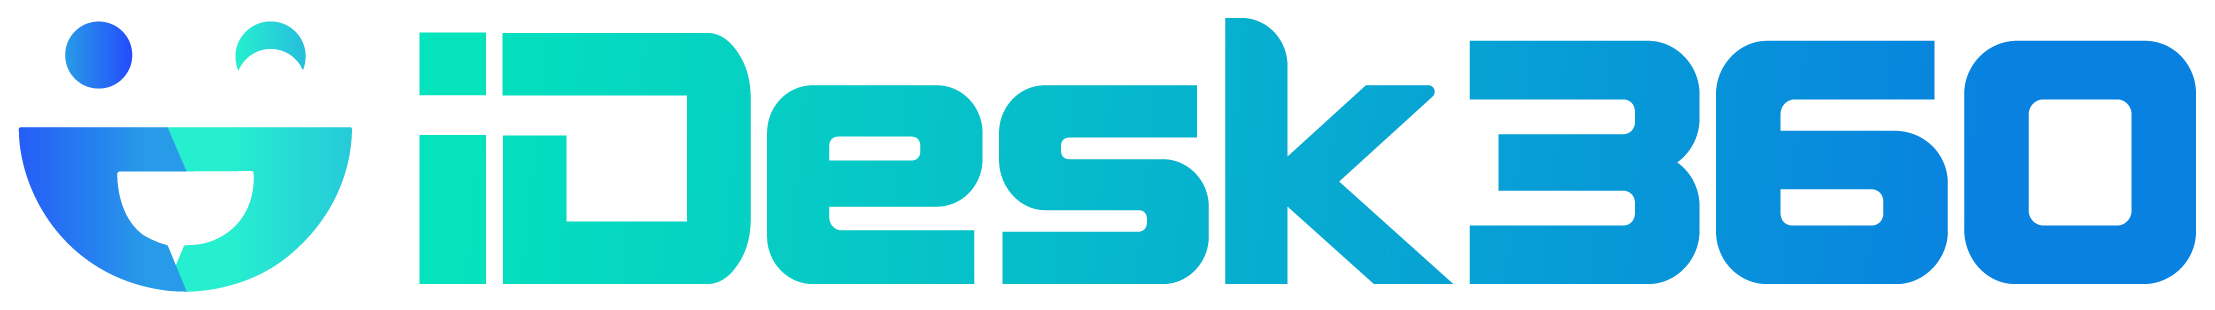 idesk360-logo